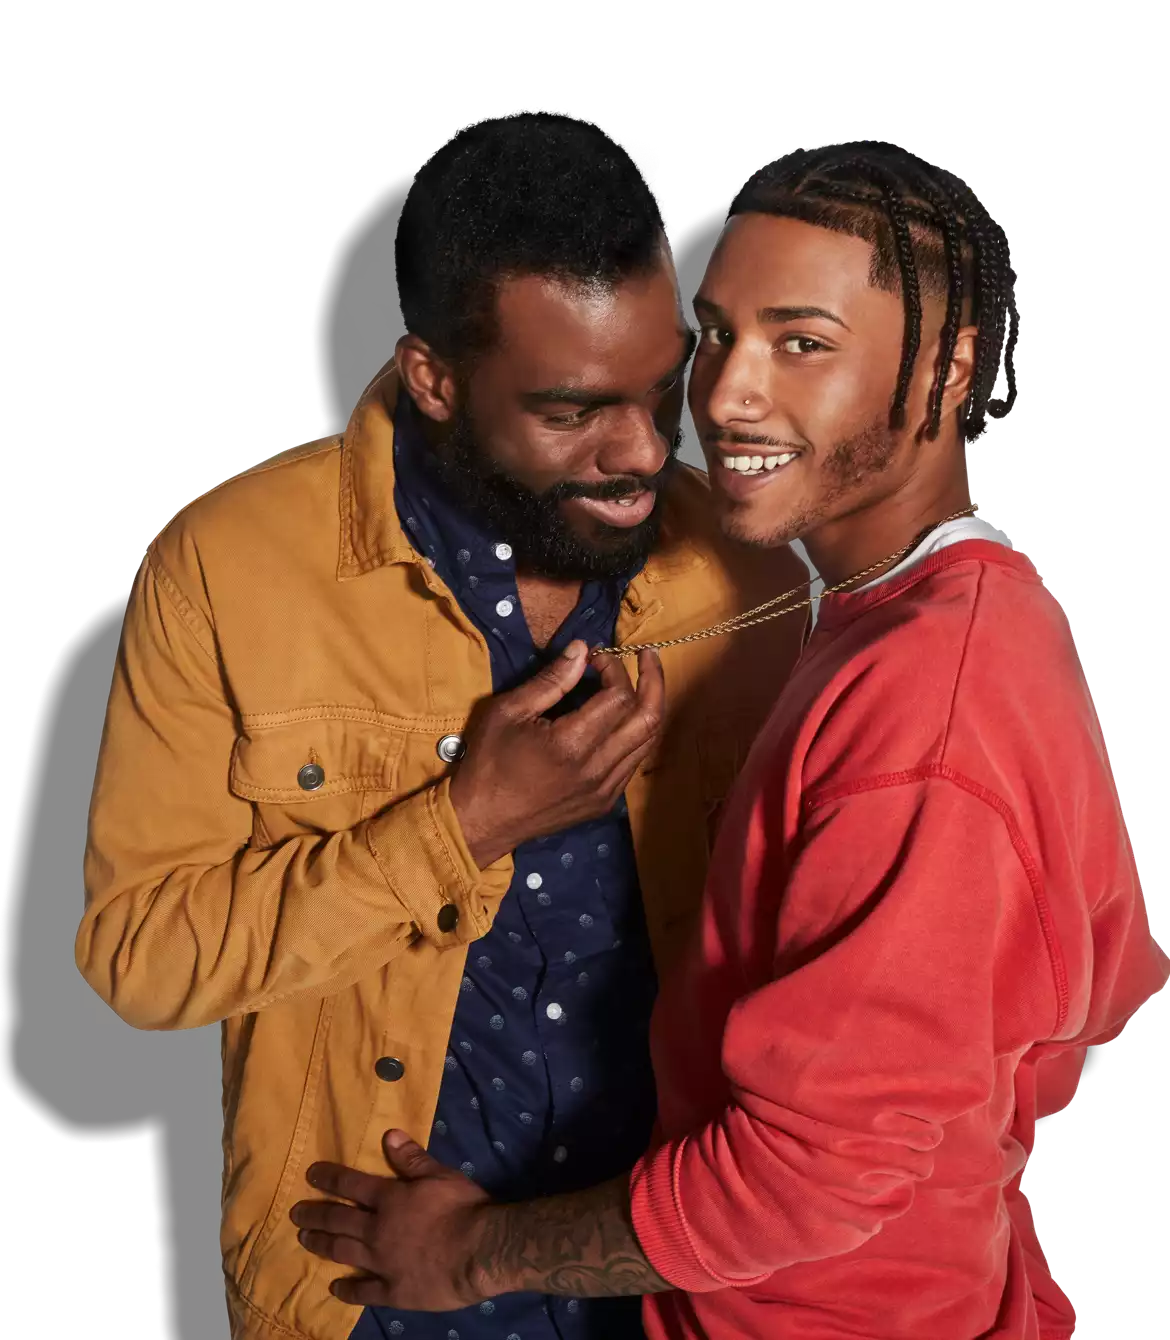 dos gays abrazados íntimamente y sonriendo